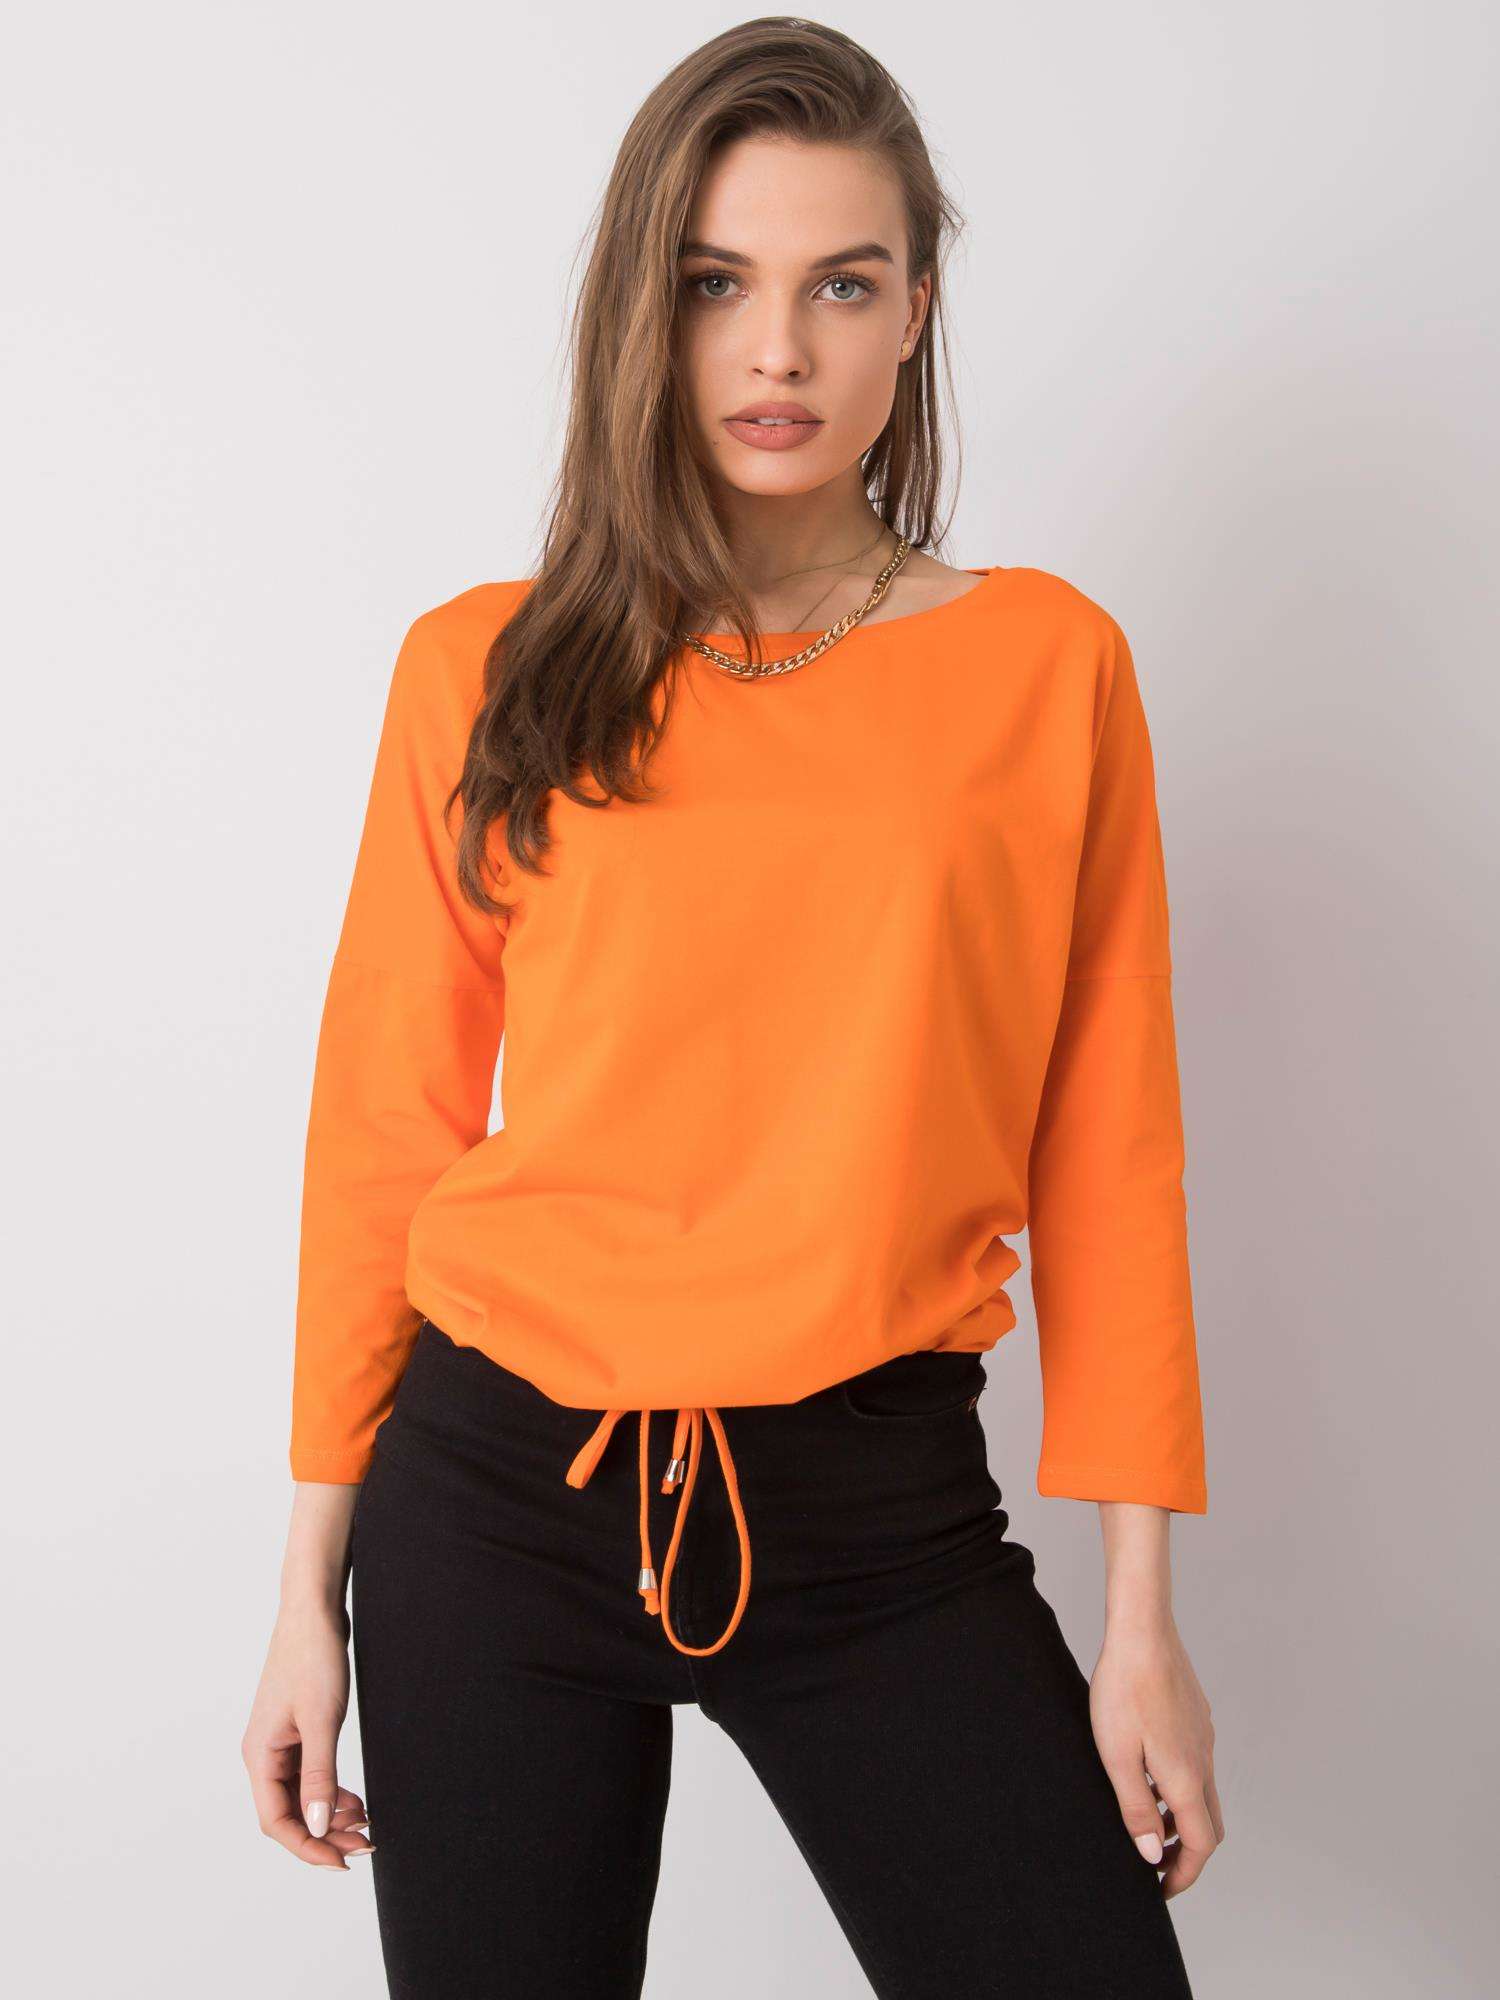 Oranžové dámské tričko se stažením RV-BZ-4691.43P-orange Velikost: L